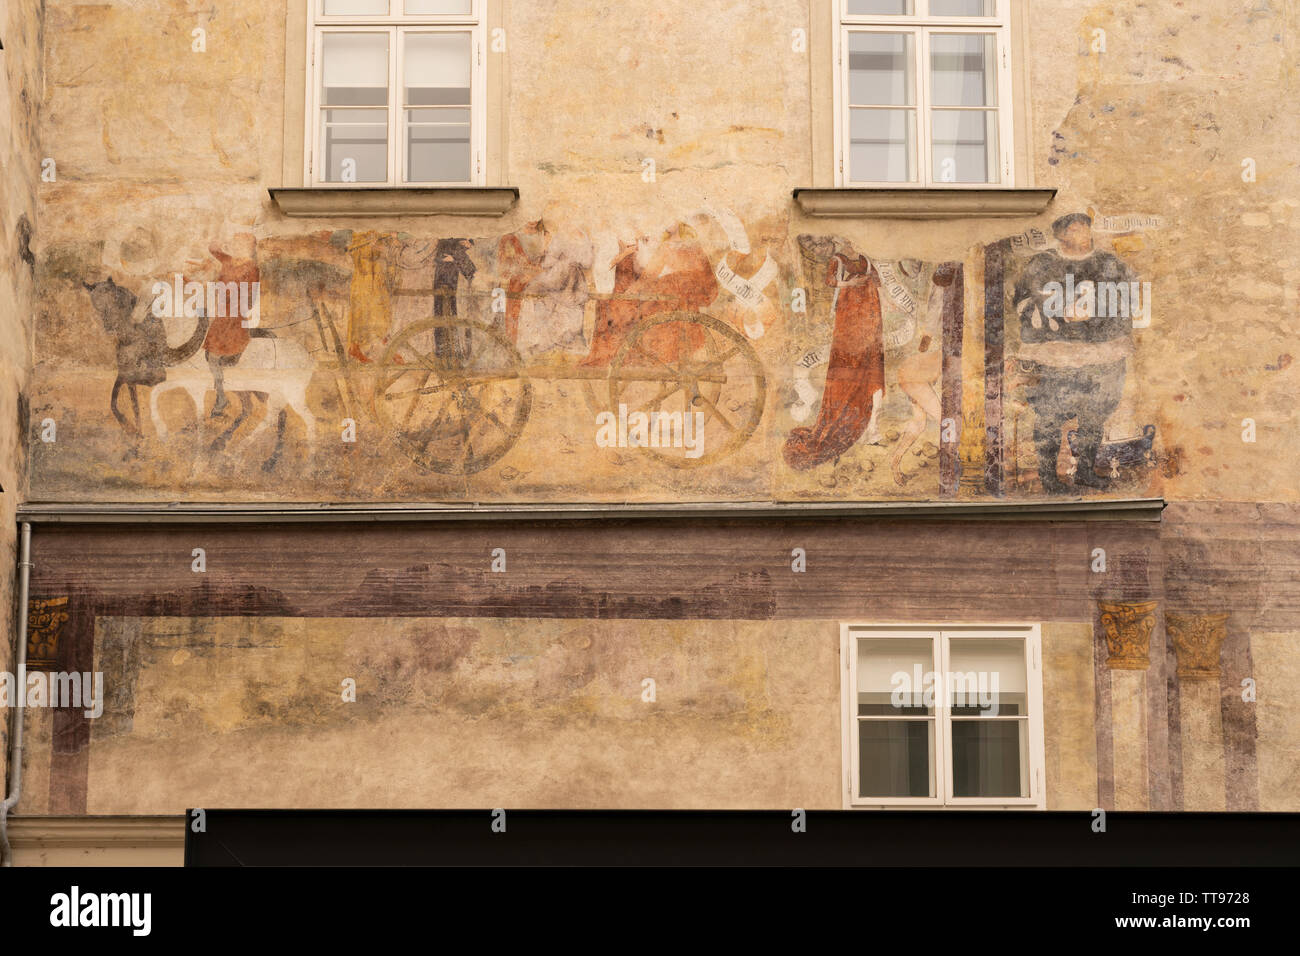 Wandbilder auf der Außenseite eines Hauses in Krems an der Donau Stadt Zentrum bis in das Mittelalter zurückgeht, zeigt eine von Pferden gezogene Wagen sitzende Figuren Stockfoto